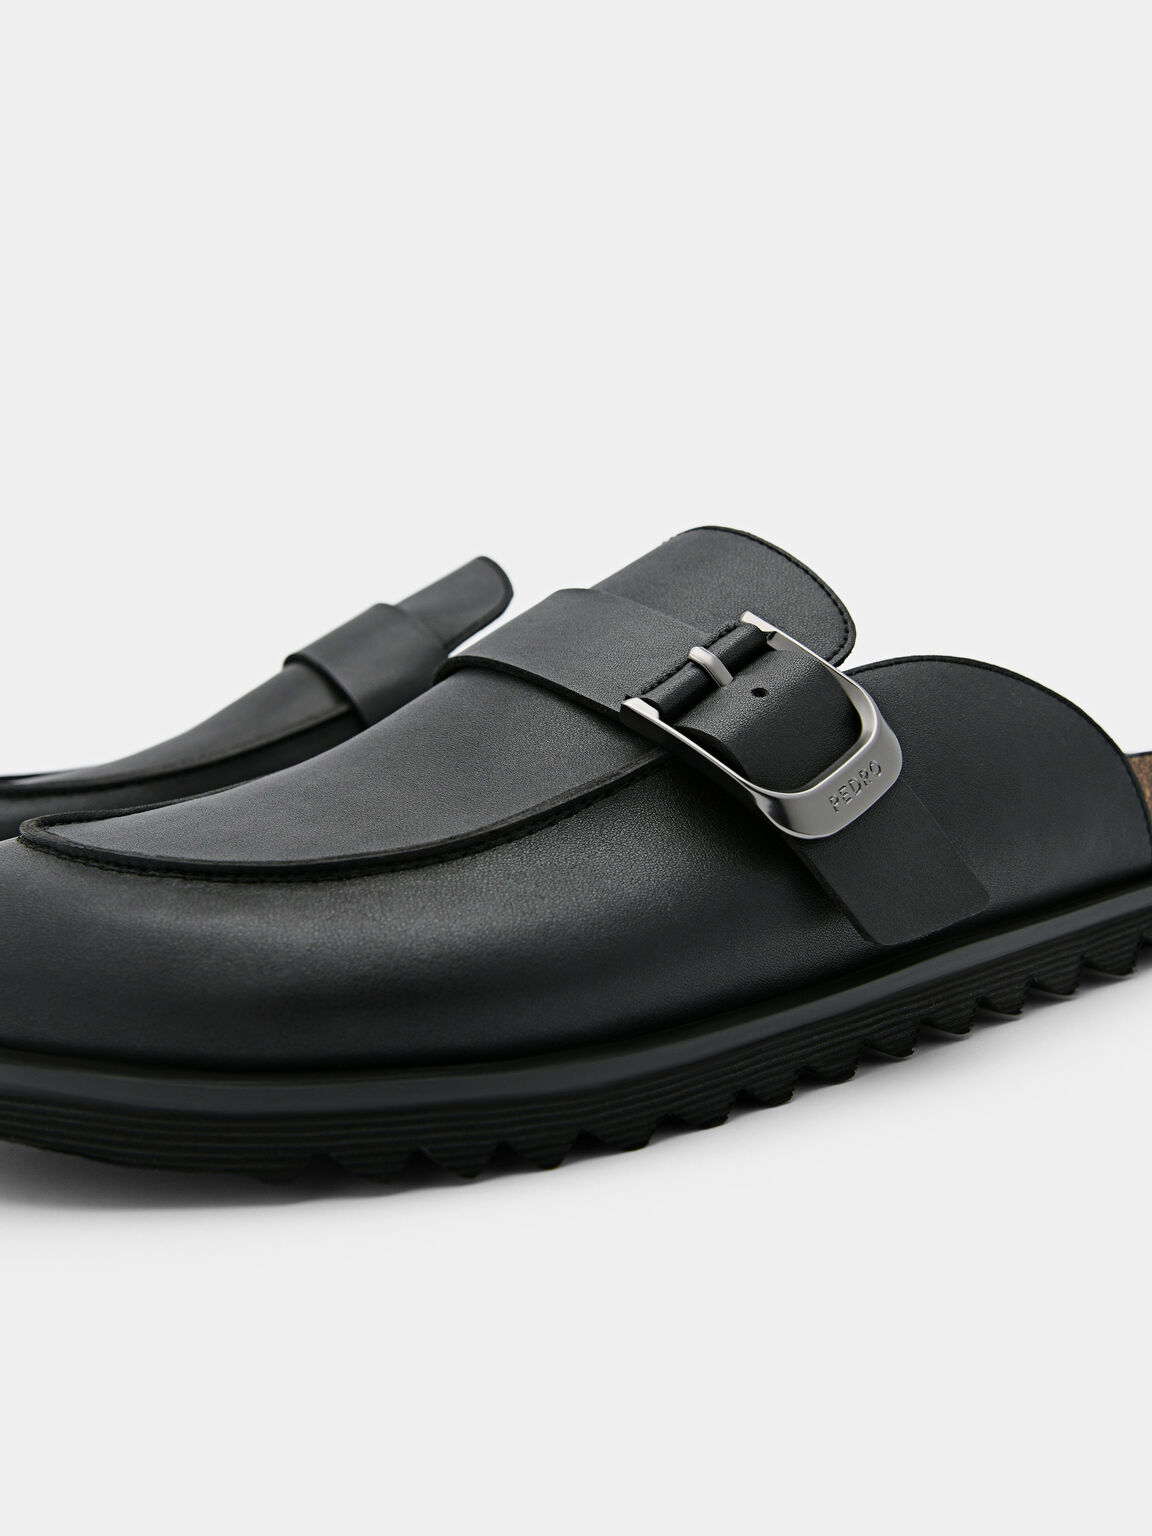 Men's Helix Slip-On Sandals, Black, hi-res